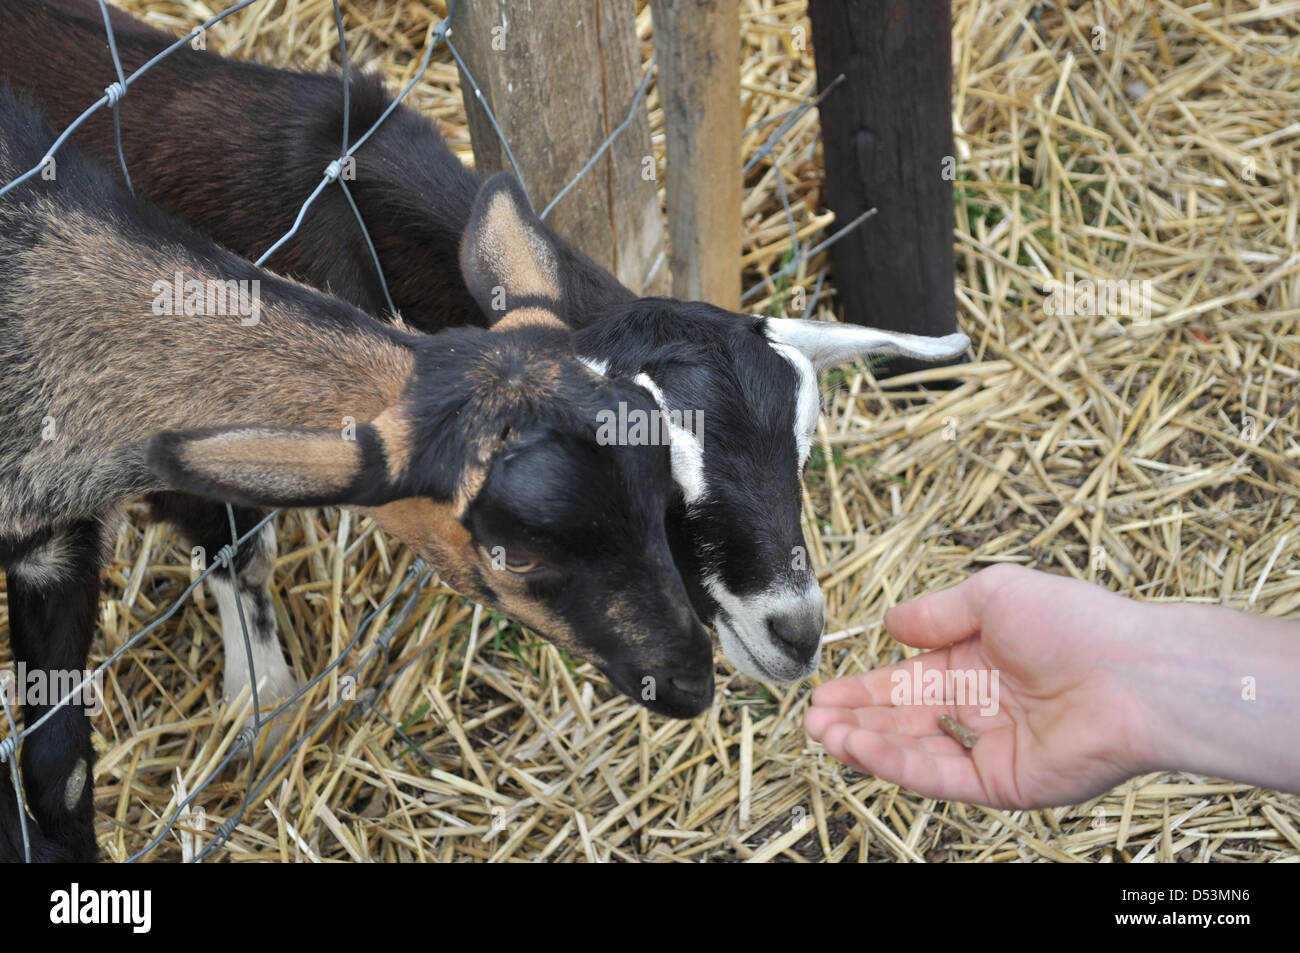 Man feeding goats at UK farm Stock Photo